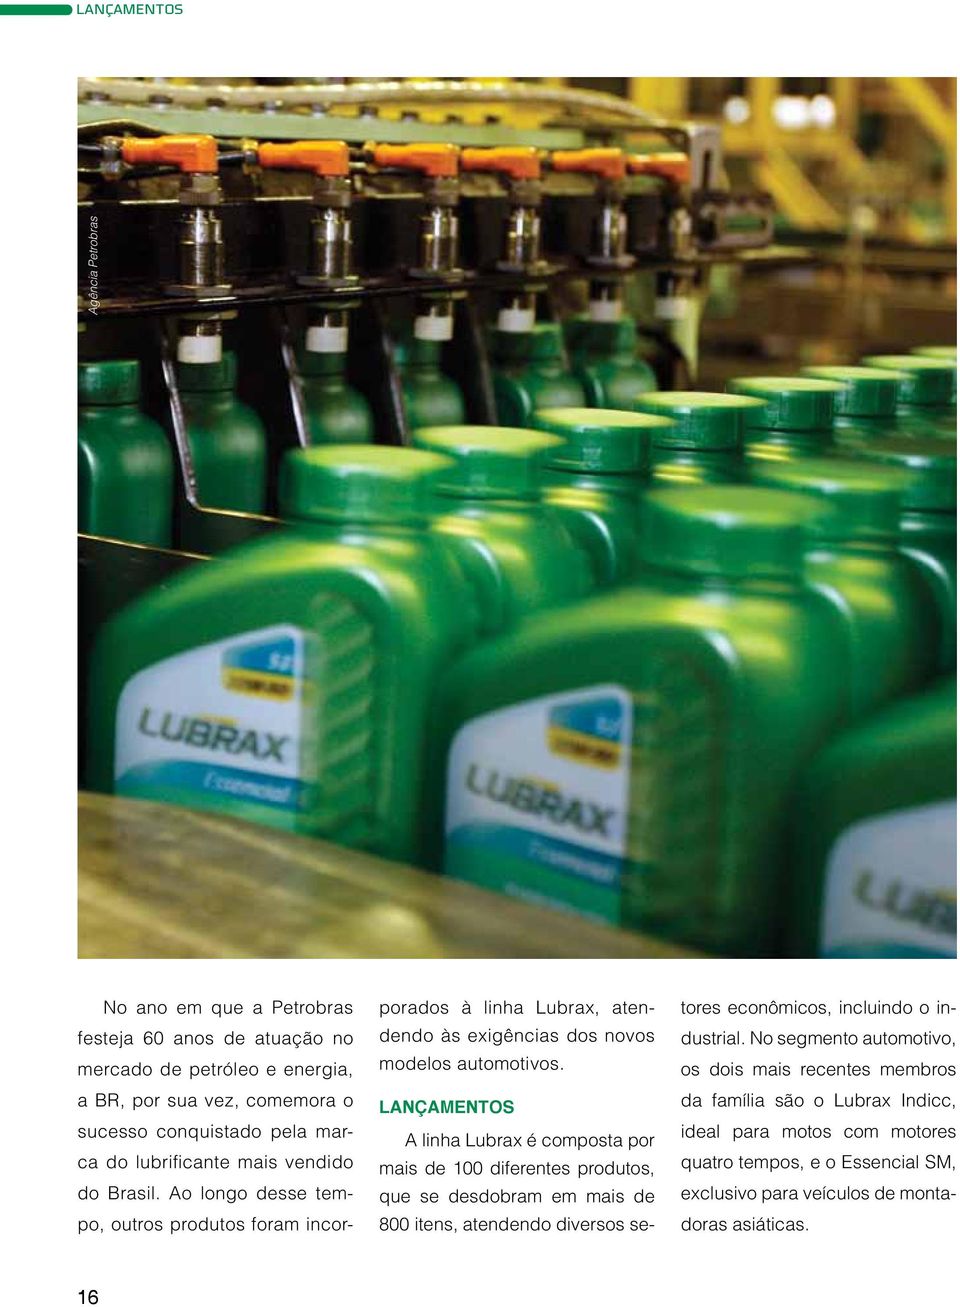 Lançamentos A linha Lubrax é composta por mais de 100 diferentes produtos, que se desdobram em mais de 800 itens, atendendo diversos setores econômicos, incluindo o industrial.